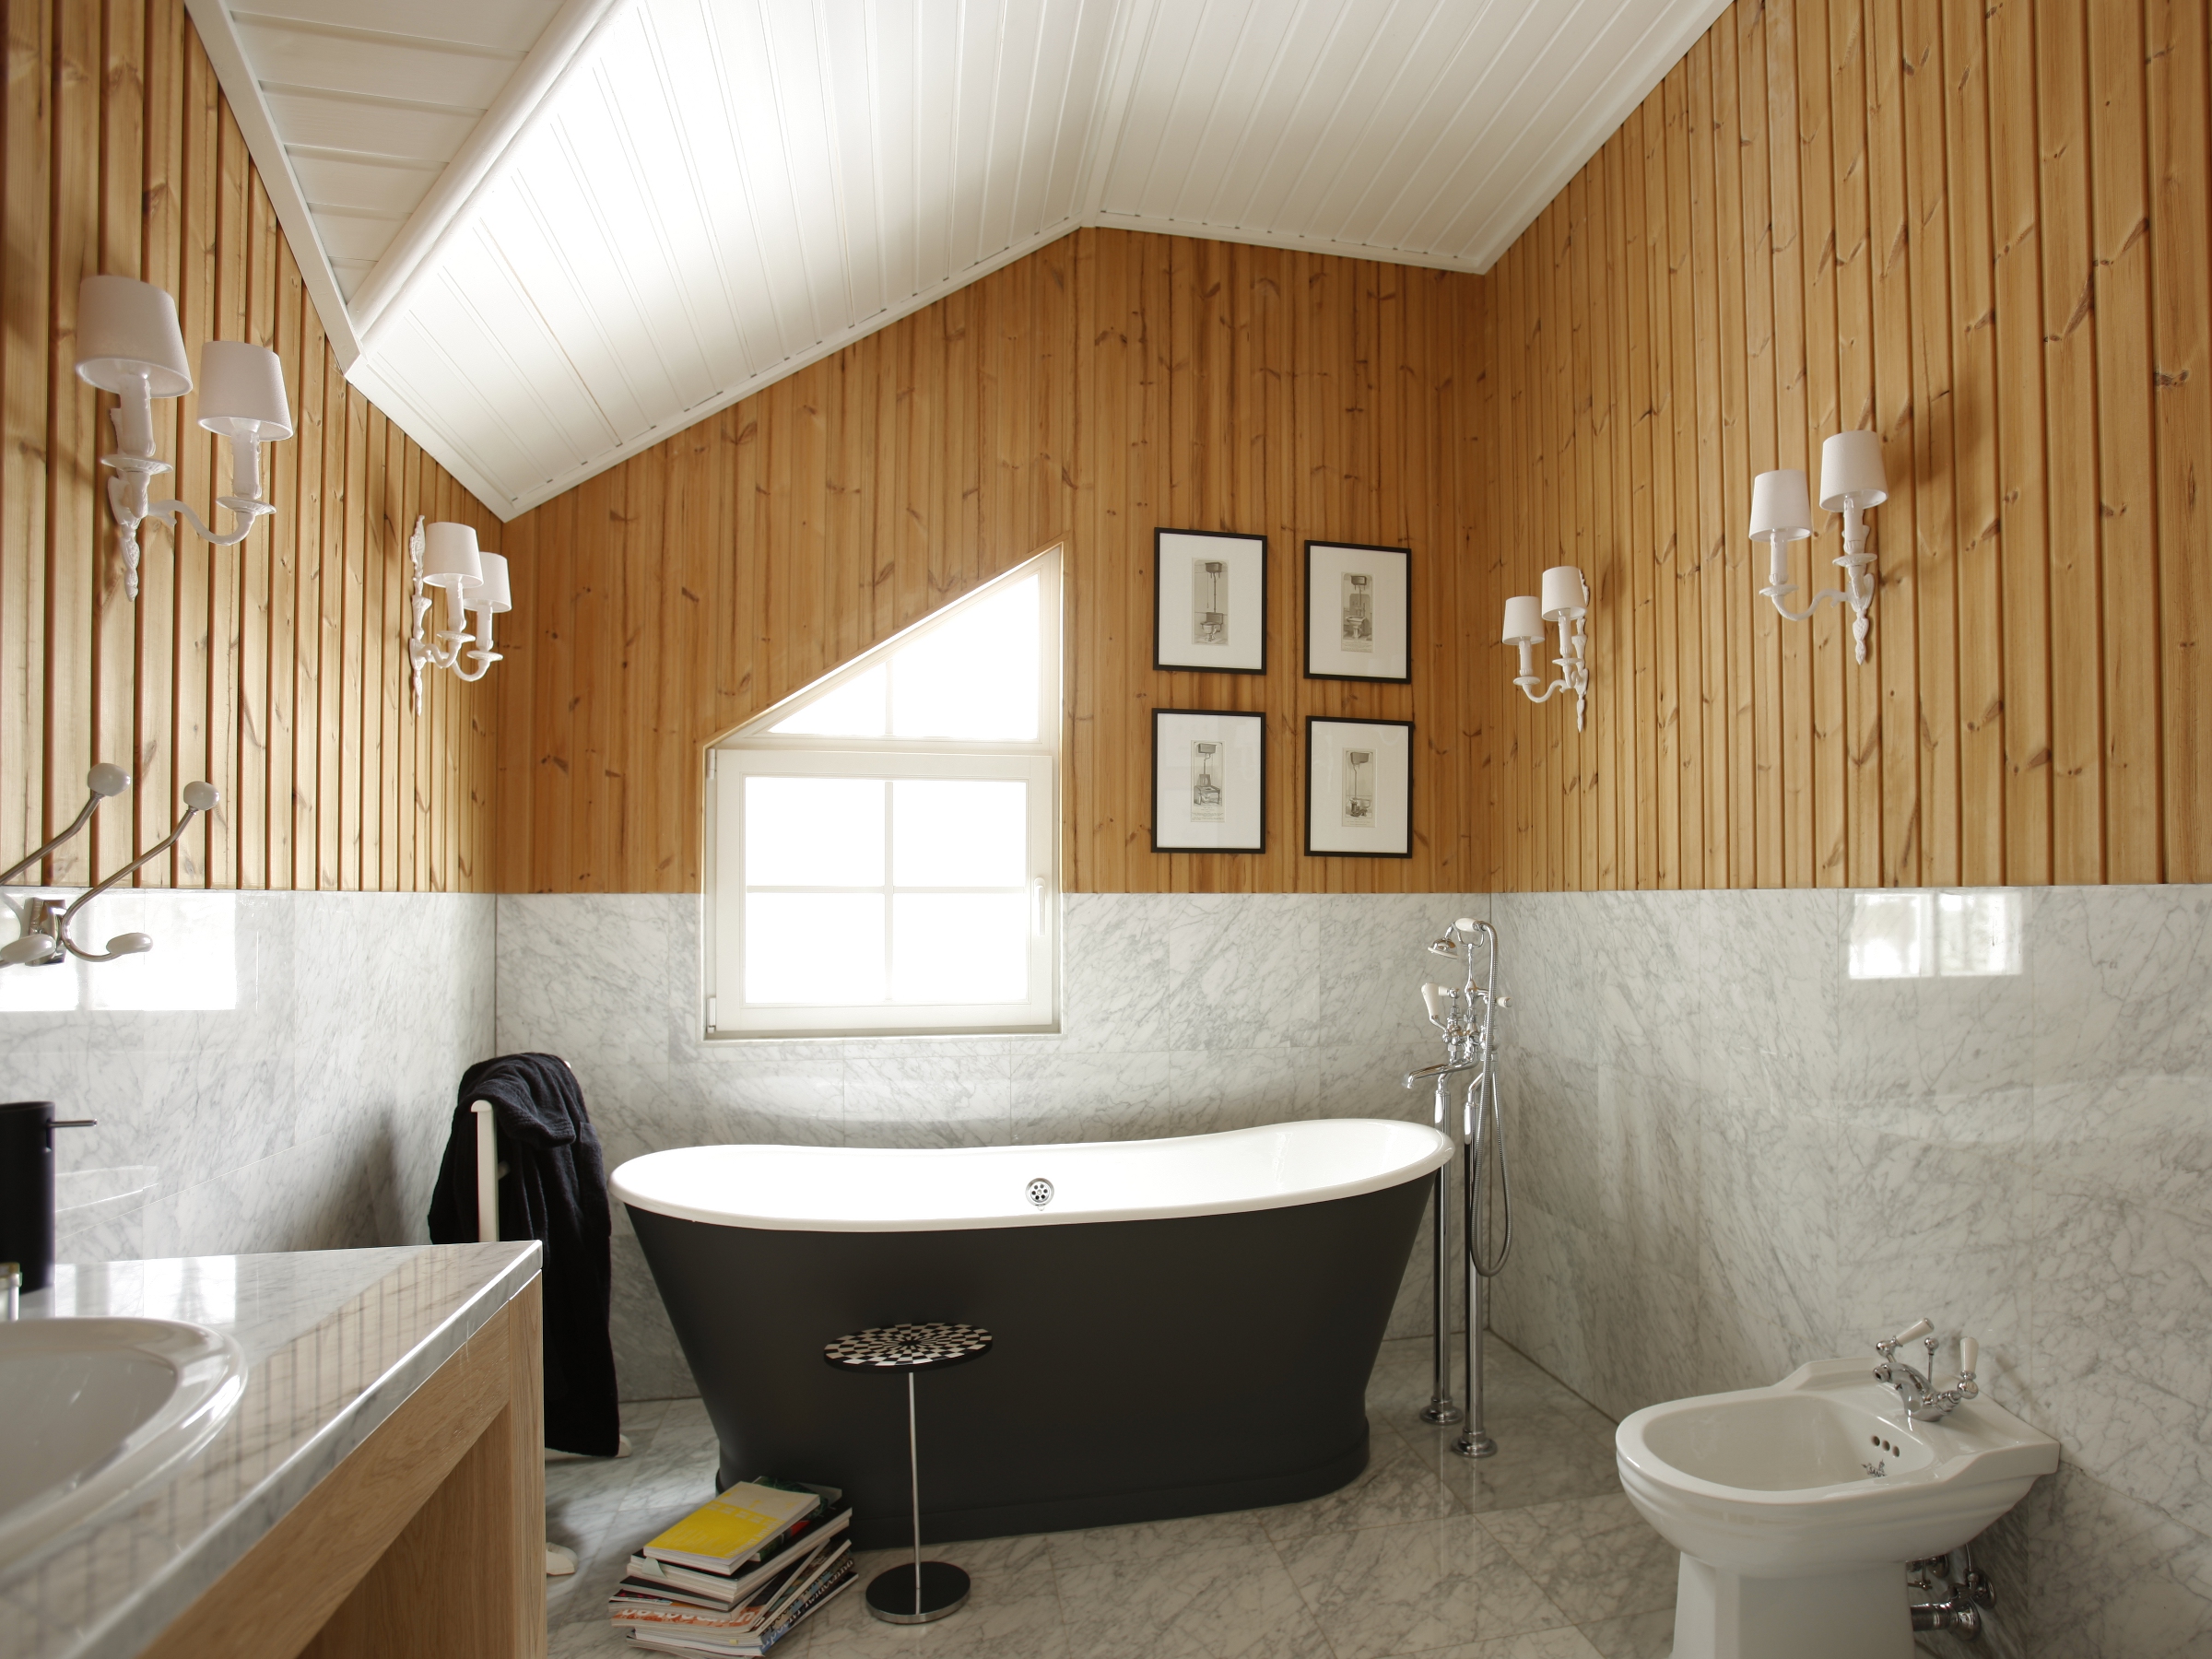 Ванная комната отделка стен панелями. Ванная комната обшитая вагонкой. Ванная комната отделанная вагонкой. Ванная отделанная вагонкой деревянной. Комбинированная отделка ванной.